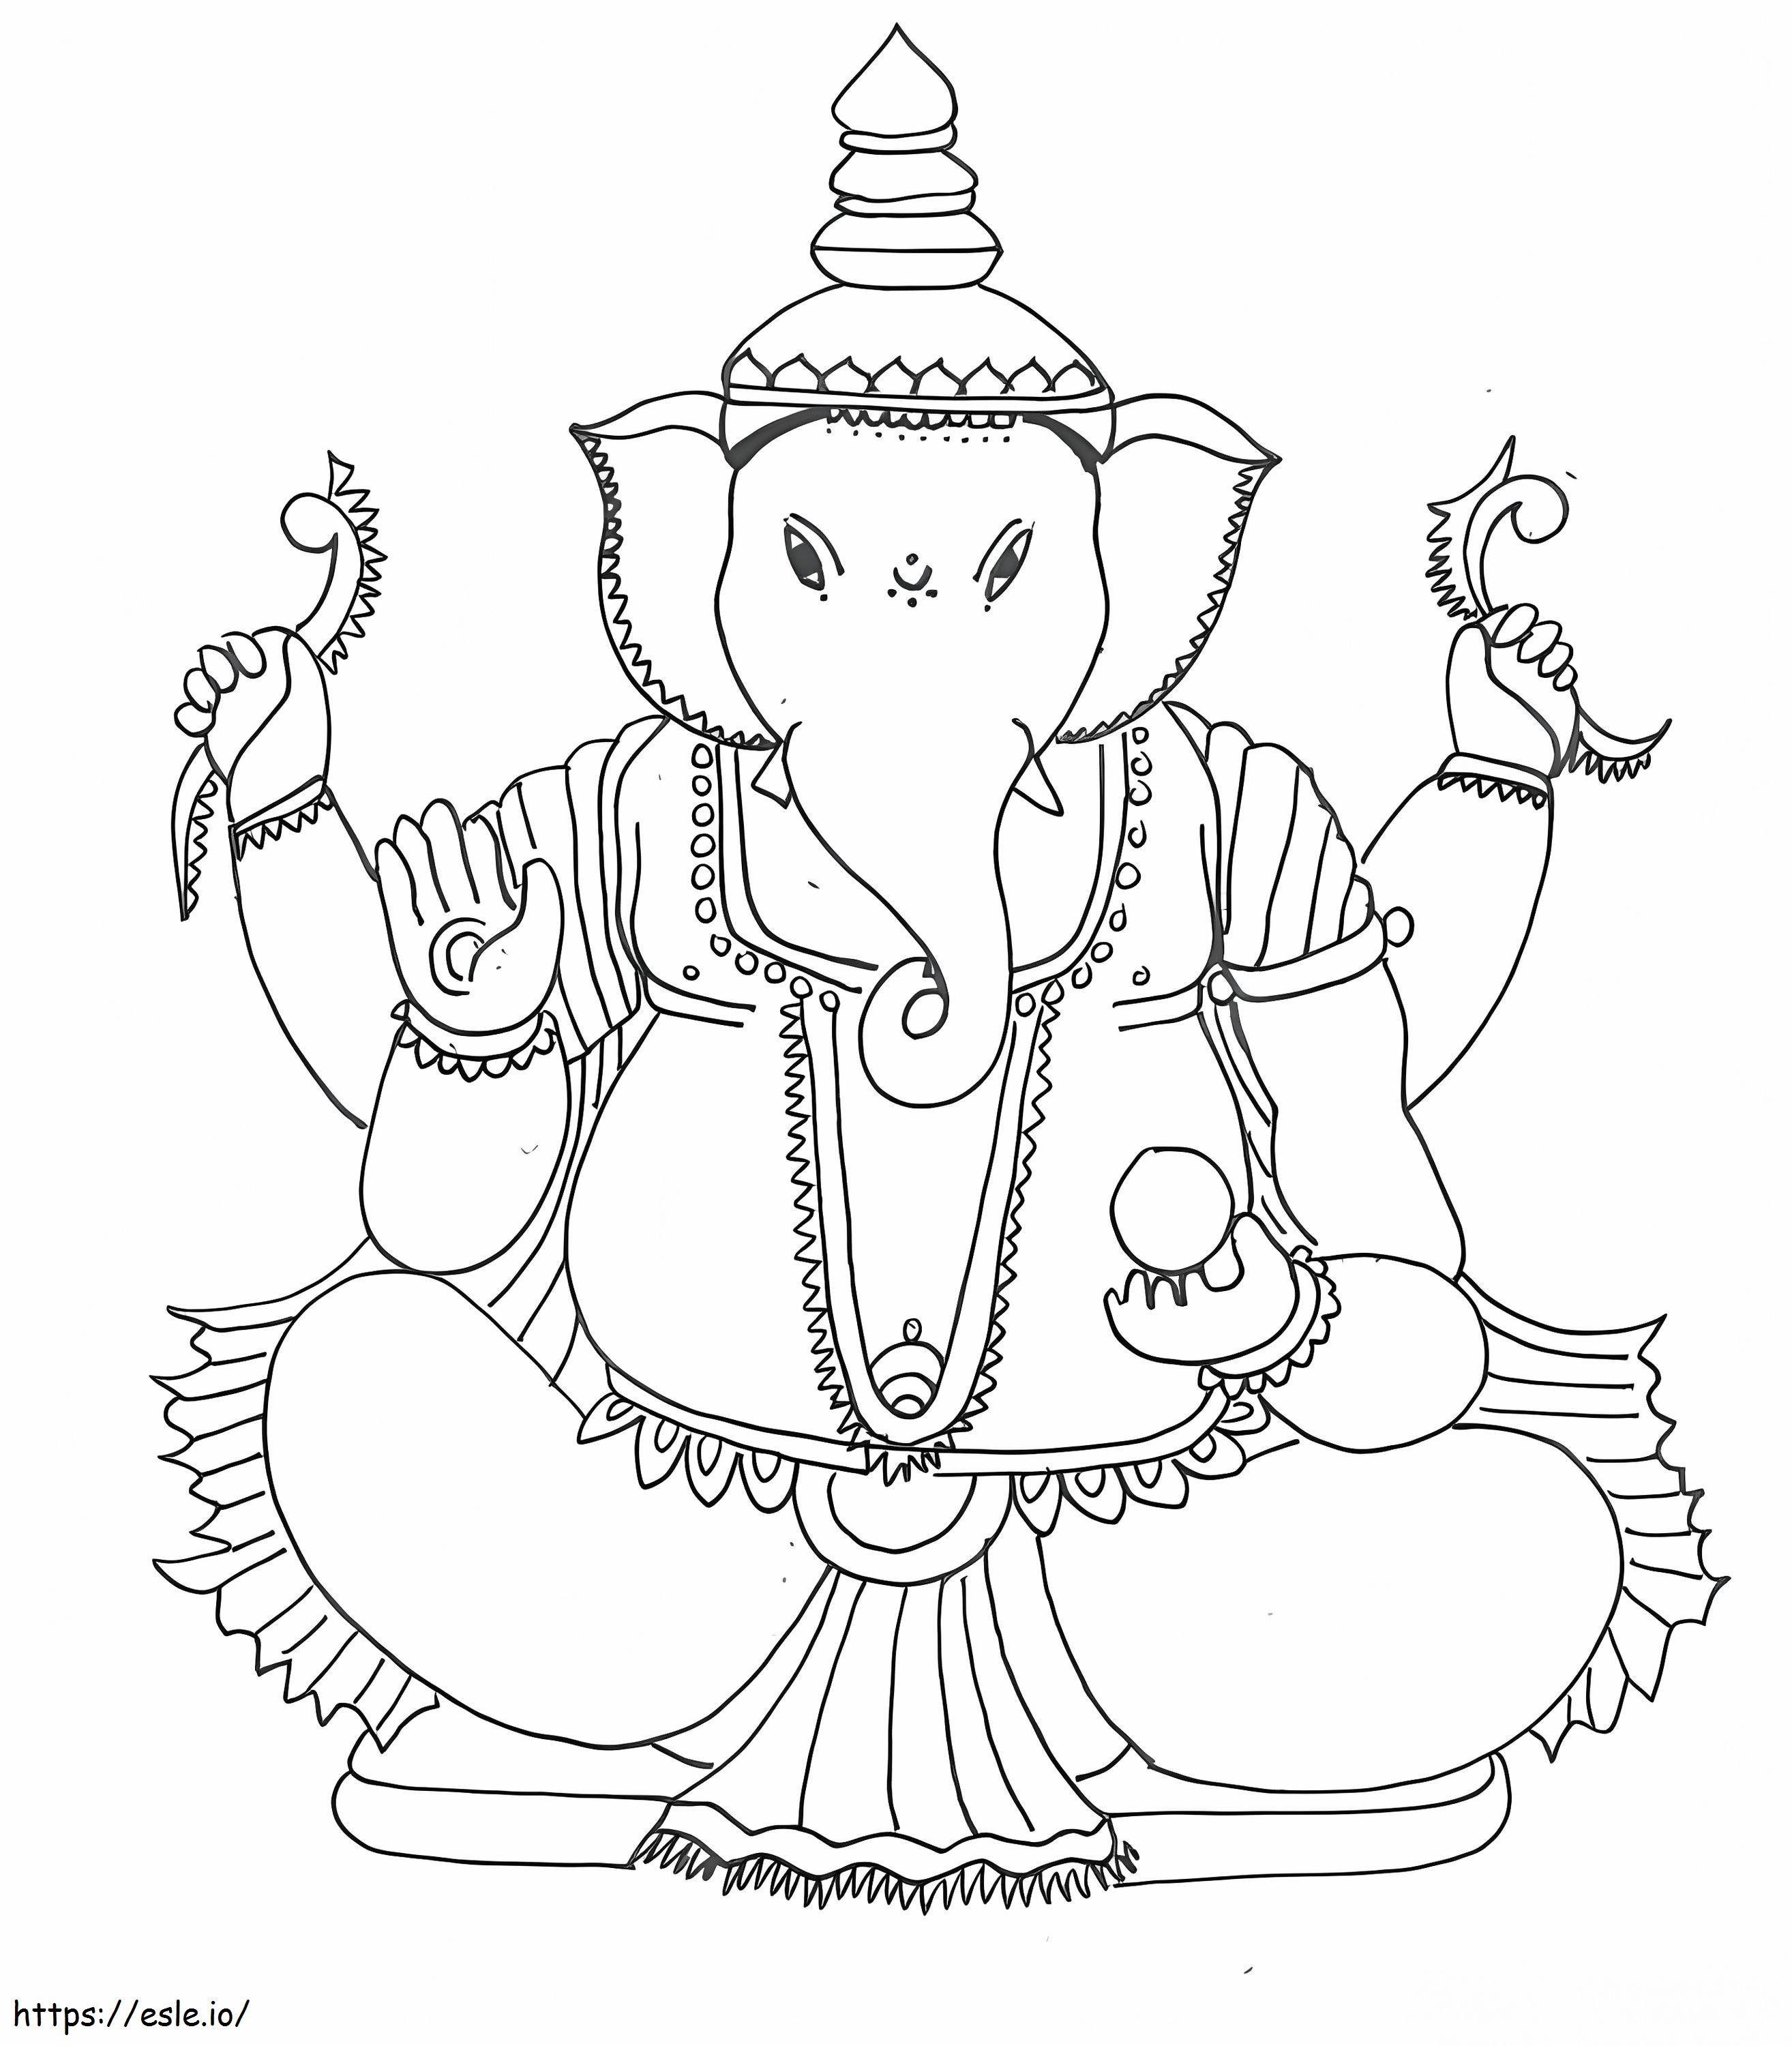 Lord Ganesha 2 coloring page